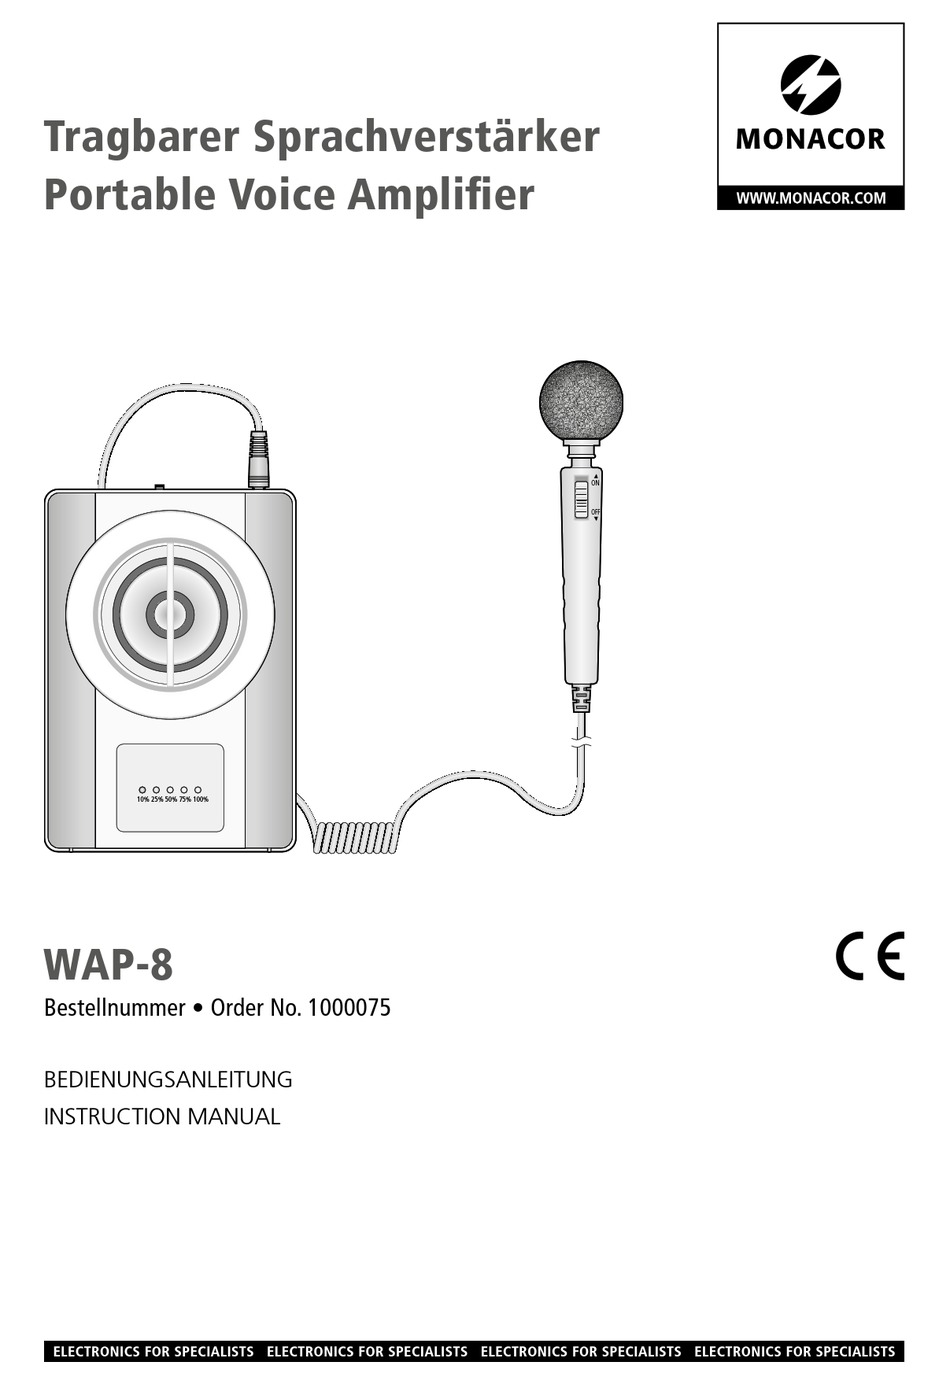 Monacor WAP-8 Mobile Voice Amplifier 1000075